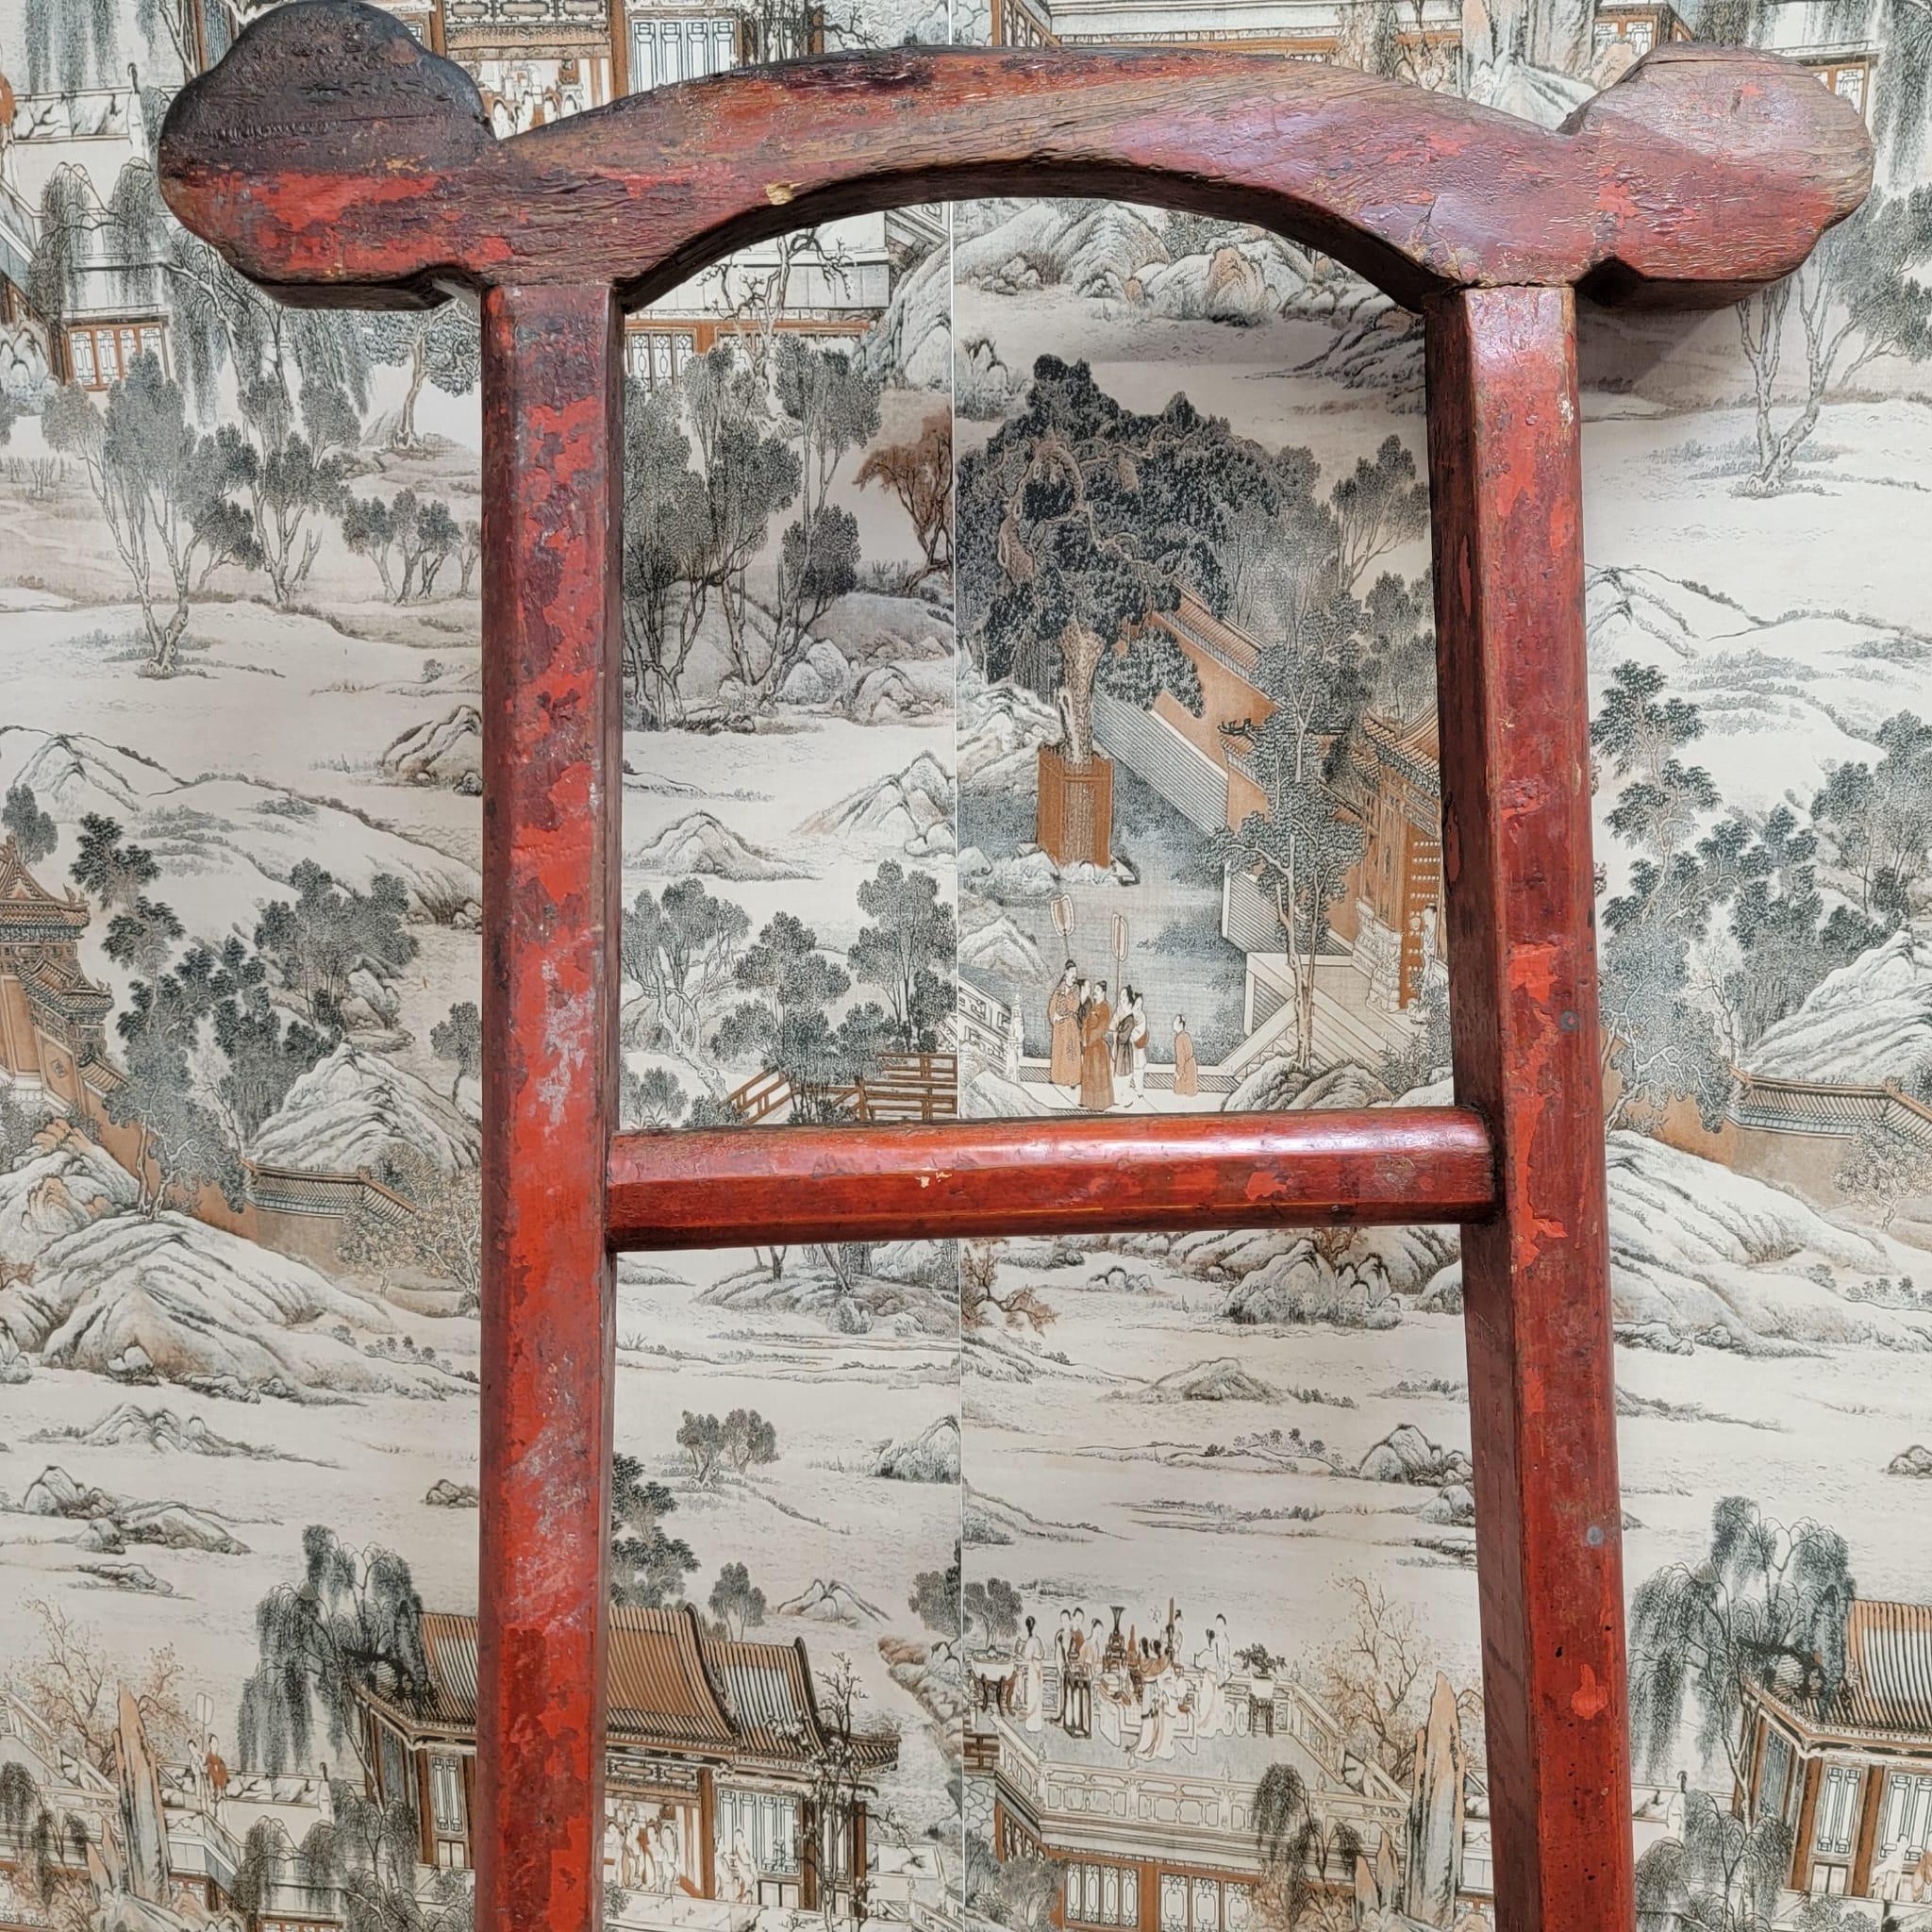 Vintage Chinese Red Lacquer Elm Dekorative Leiter

Diese dekorative Ulmenleiter im Vintage-Stil stammt aus dem Süden Chinas. Mit originaler Farbe und Patina. Wird als Display für Küchen- oder Badetücher verwendet. Praktische Eleganz. 

CIRCA: